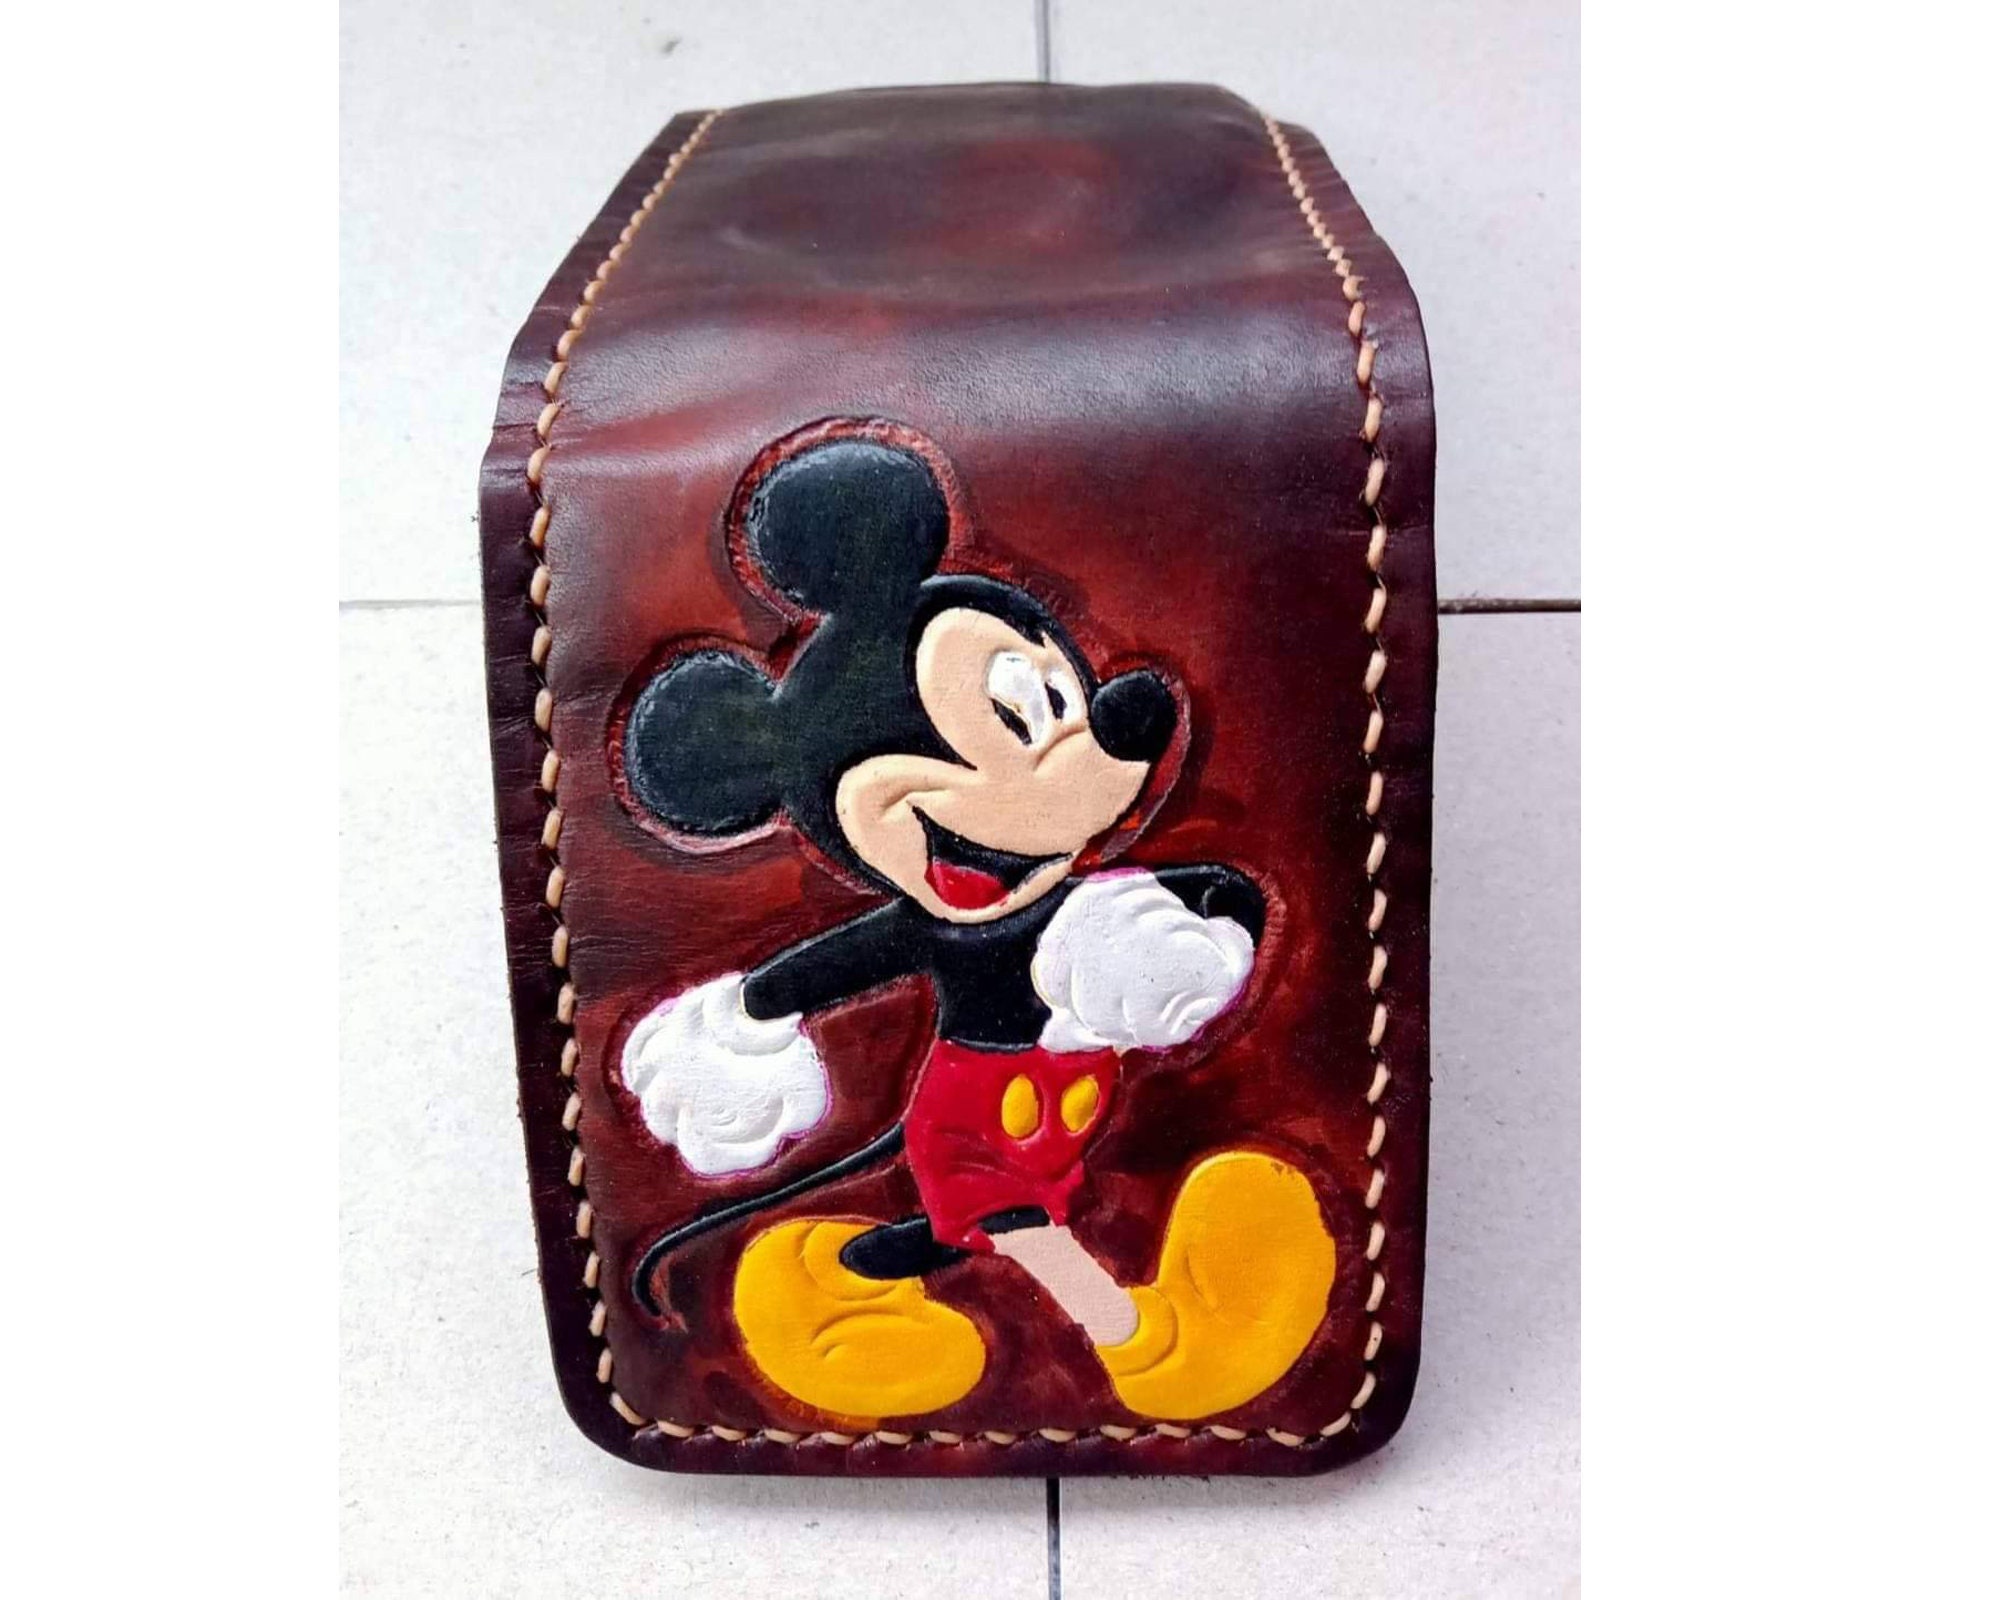 Mickey Mouse Leder Brieftasche Geschenke für Männer, Kartenhalter,  personalisierte schlanke minimalistische Lederbrieftasche, handgefertigte Mickey  Mouse Brieftasche Geschenk - .de